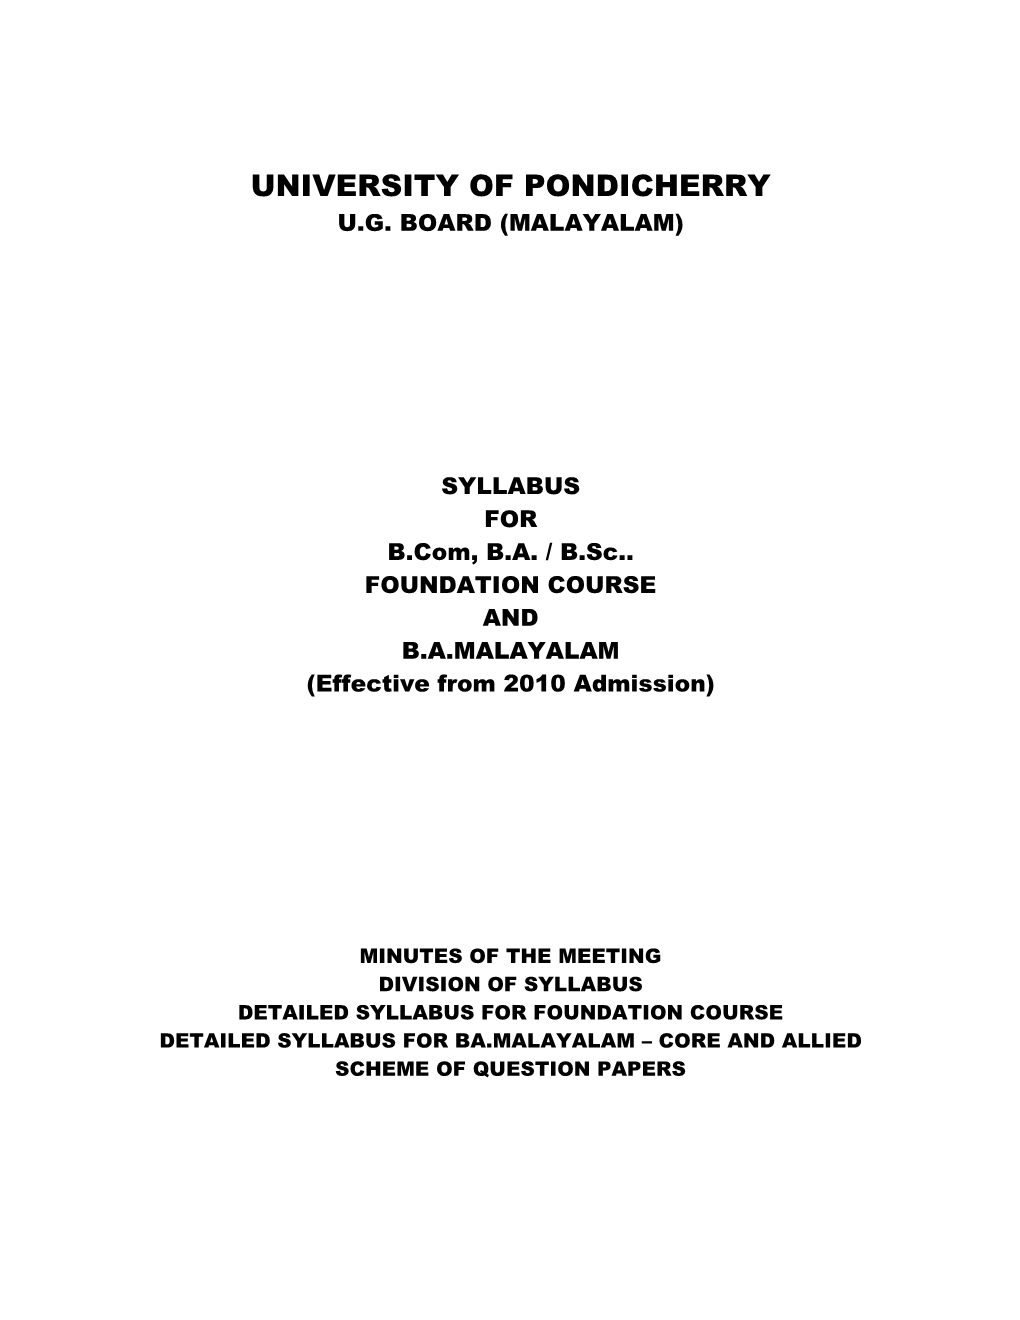 University of Pondicherry U.G